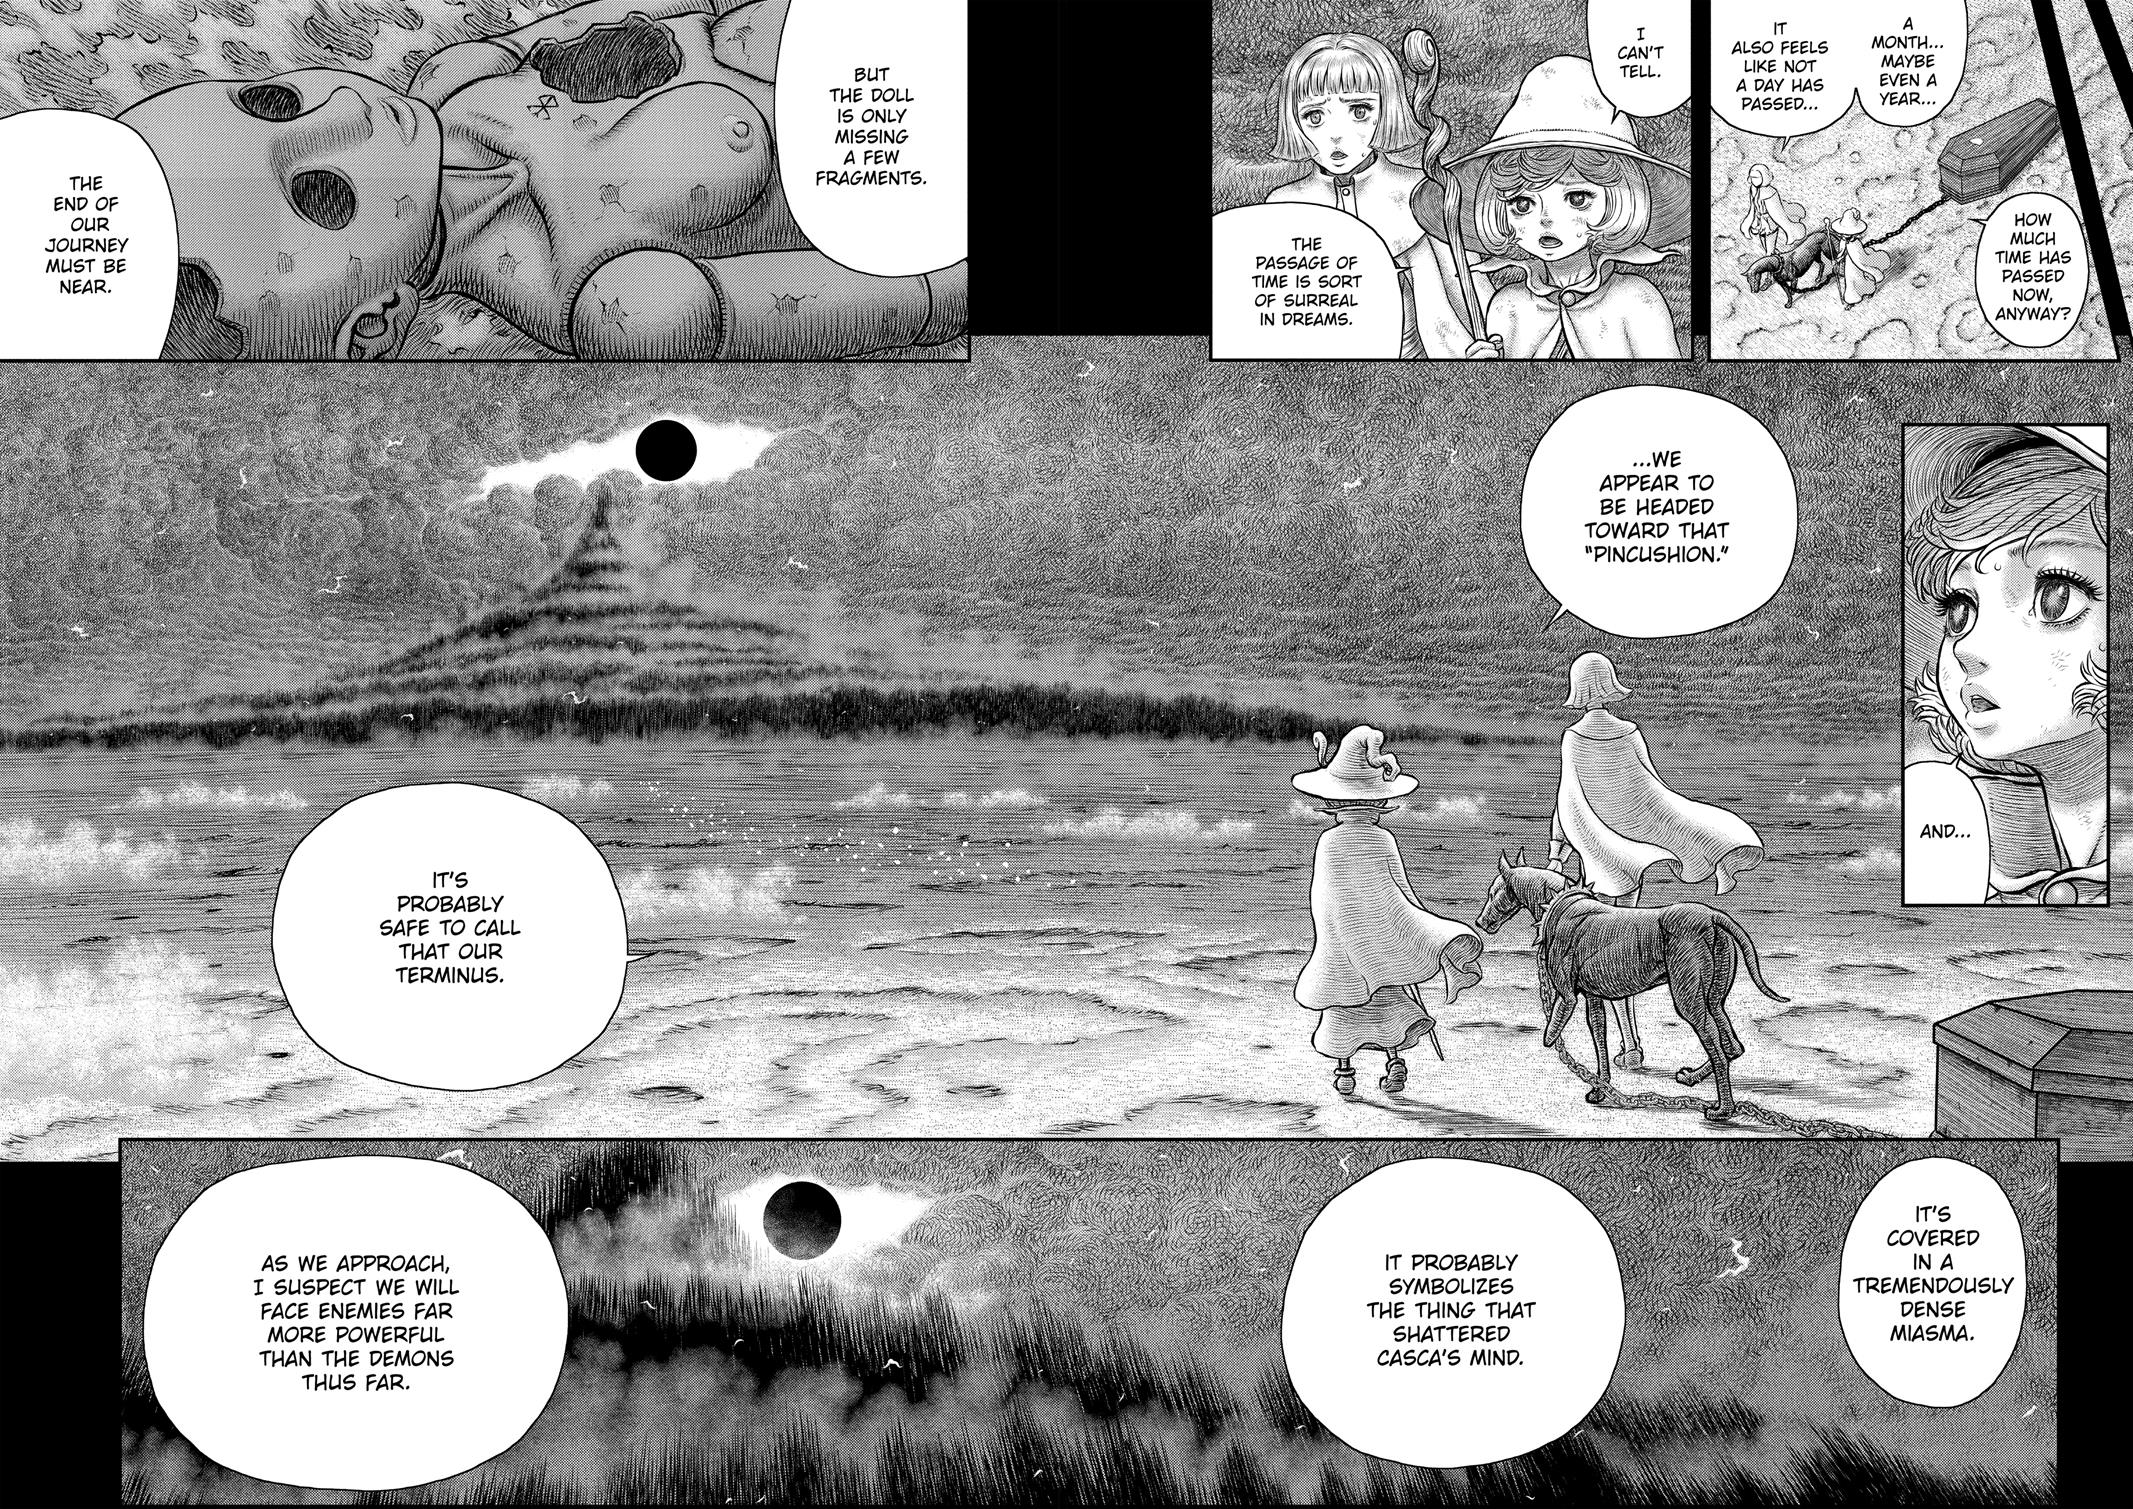 Berserk Manga Chapter 350 image 16